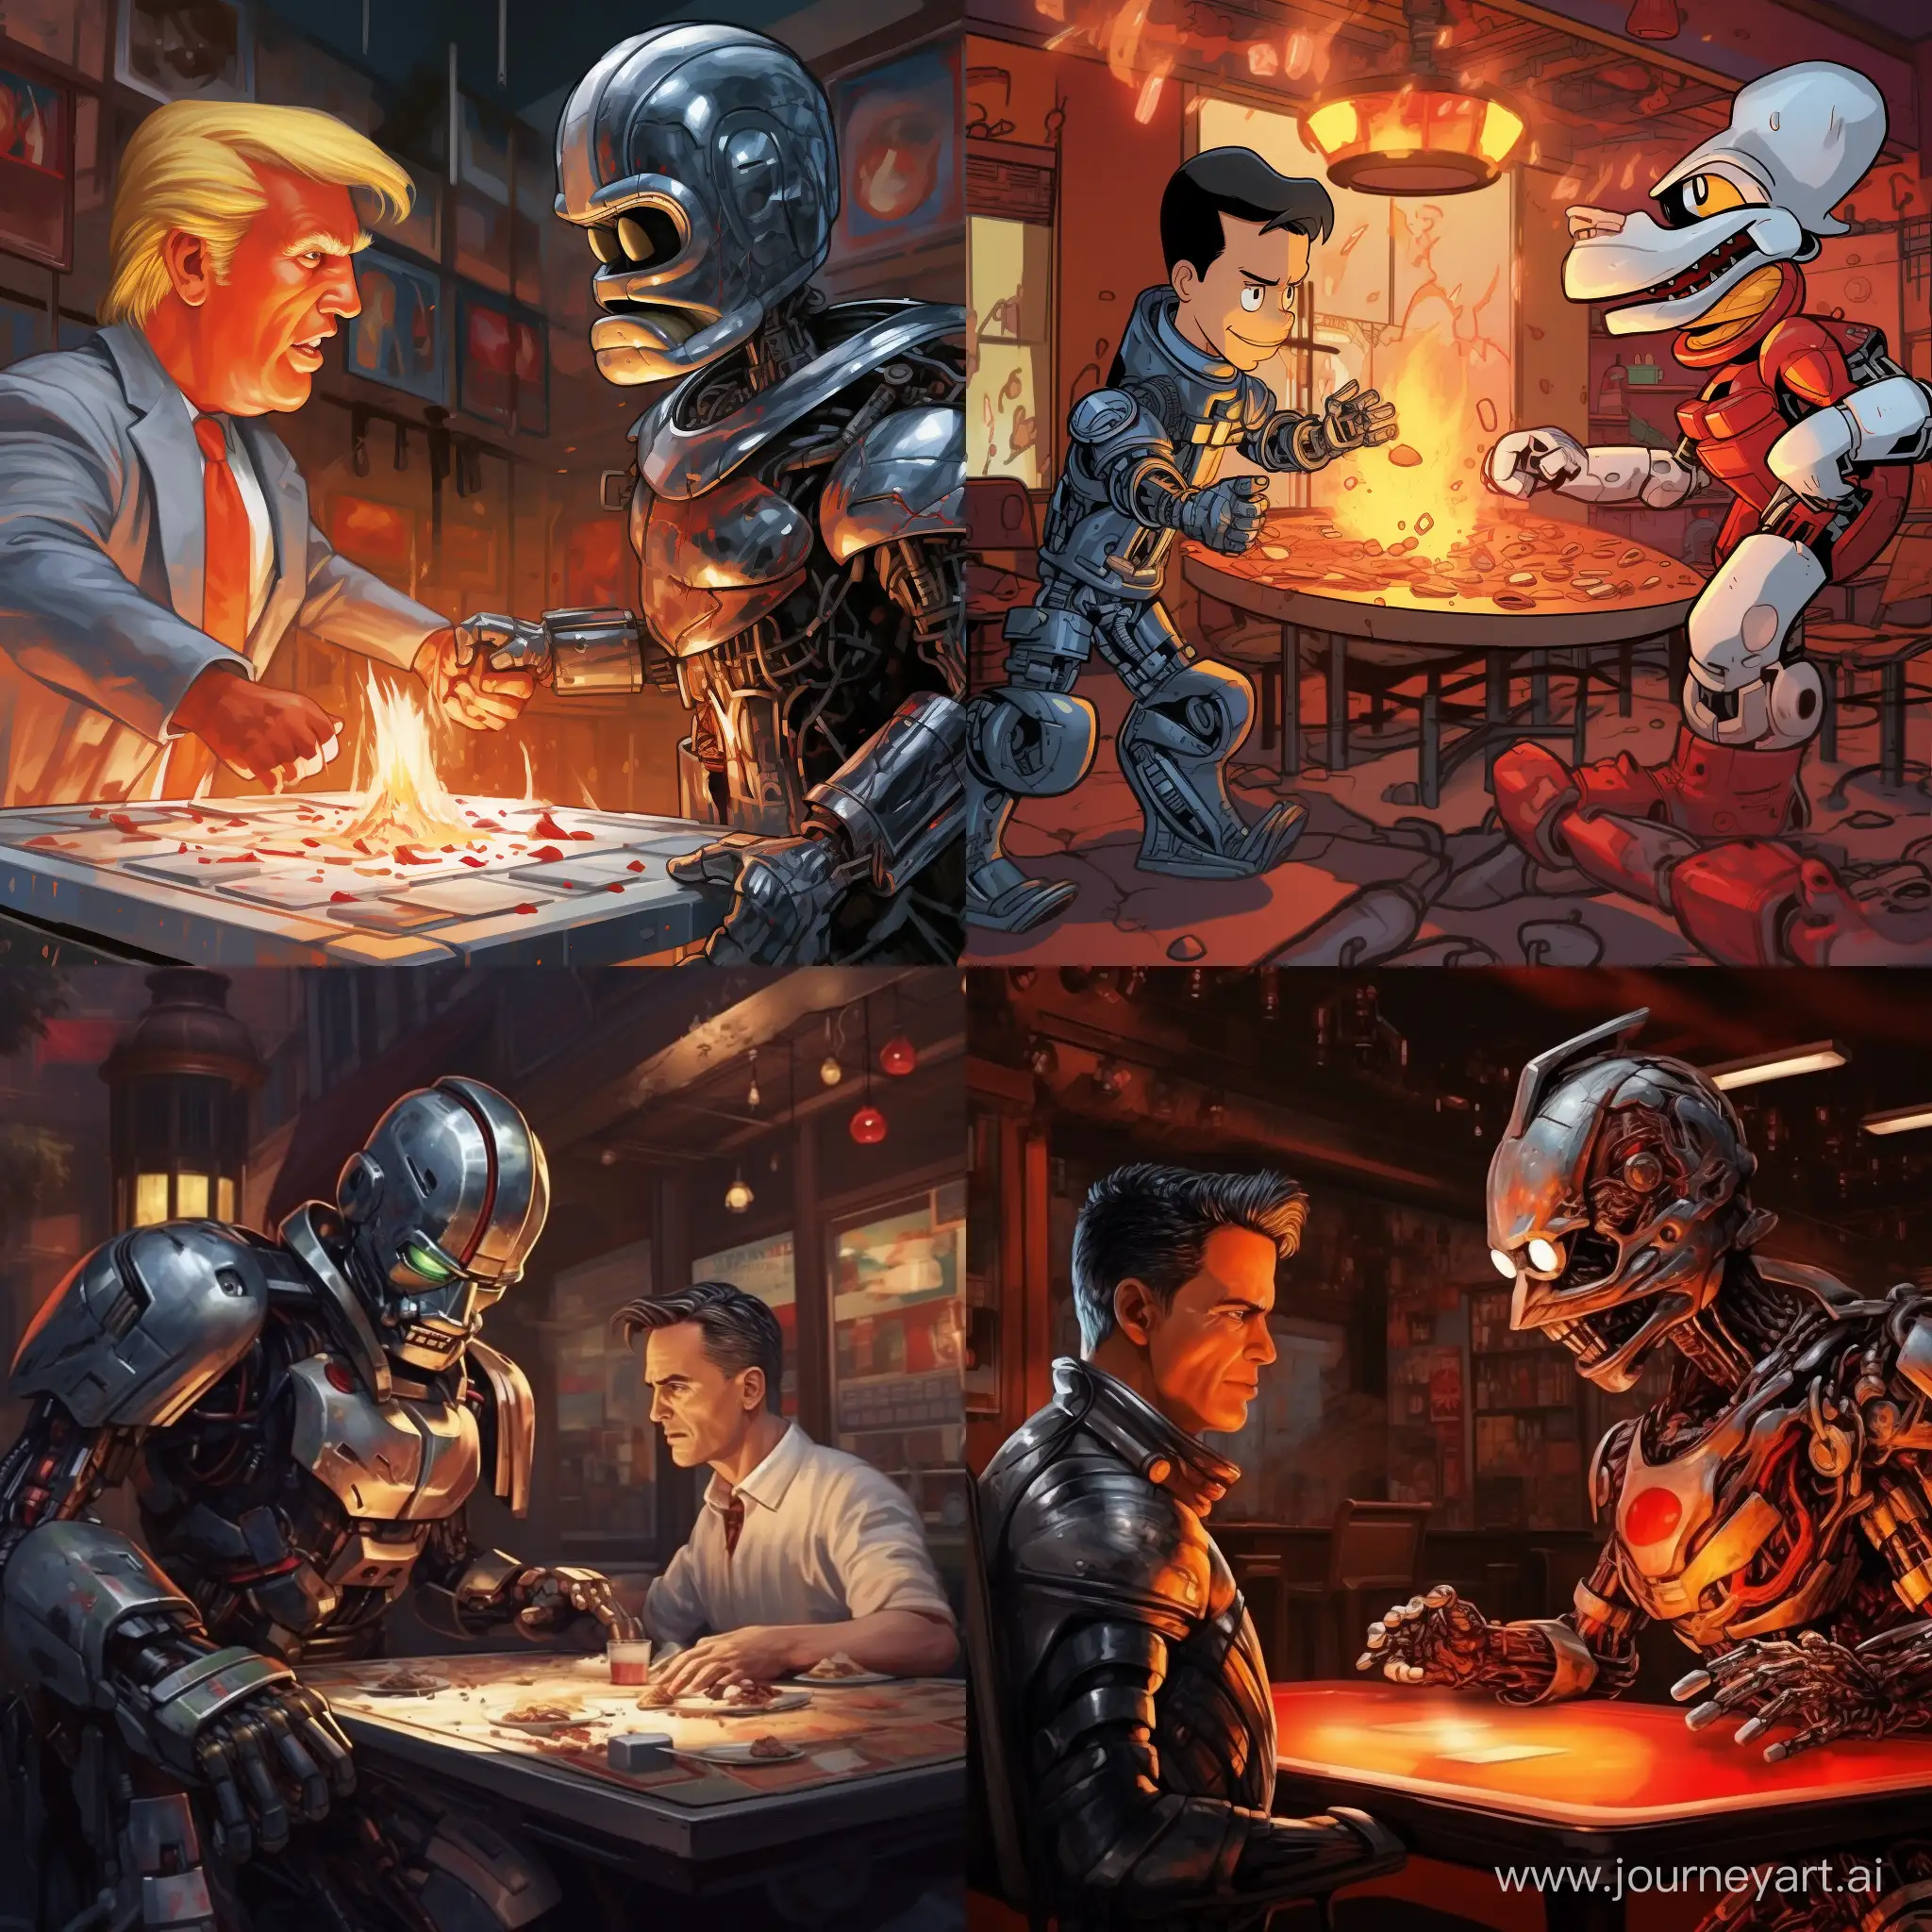 Epic-Battle-Terminator-vs-Donald-Duck-in-a-Classic-Pizzeria-Showdown